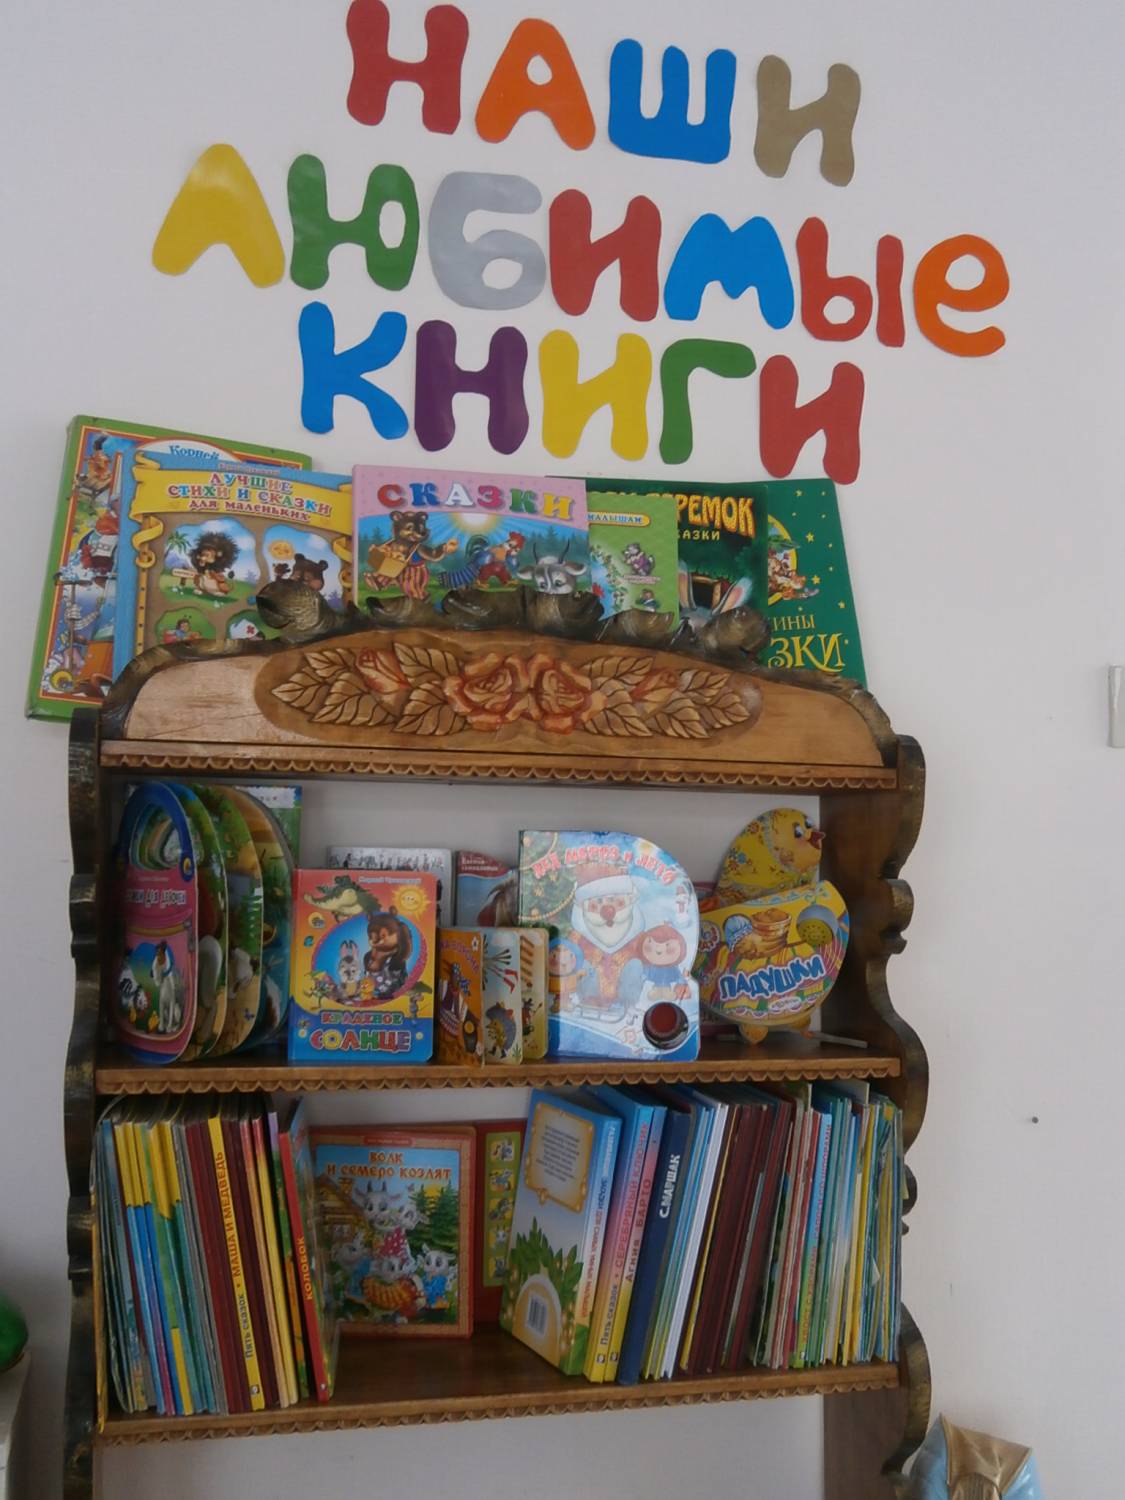 Рисунок книжного уголка в детском саду